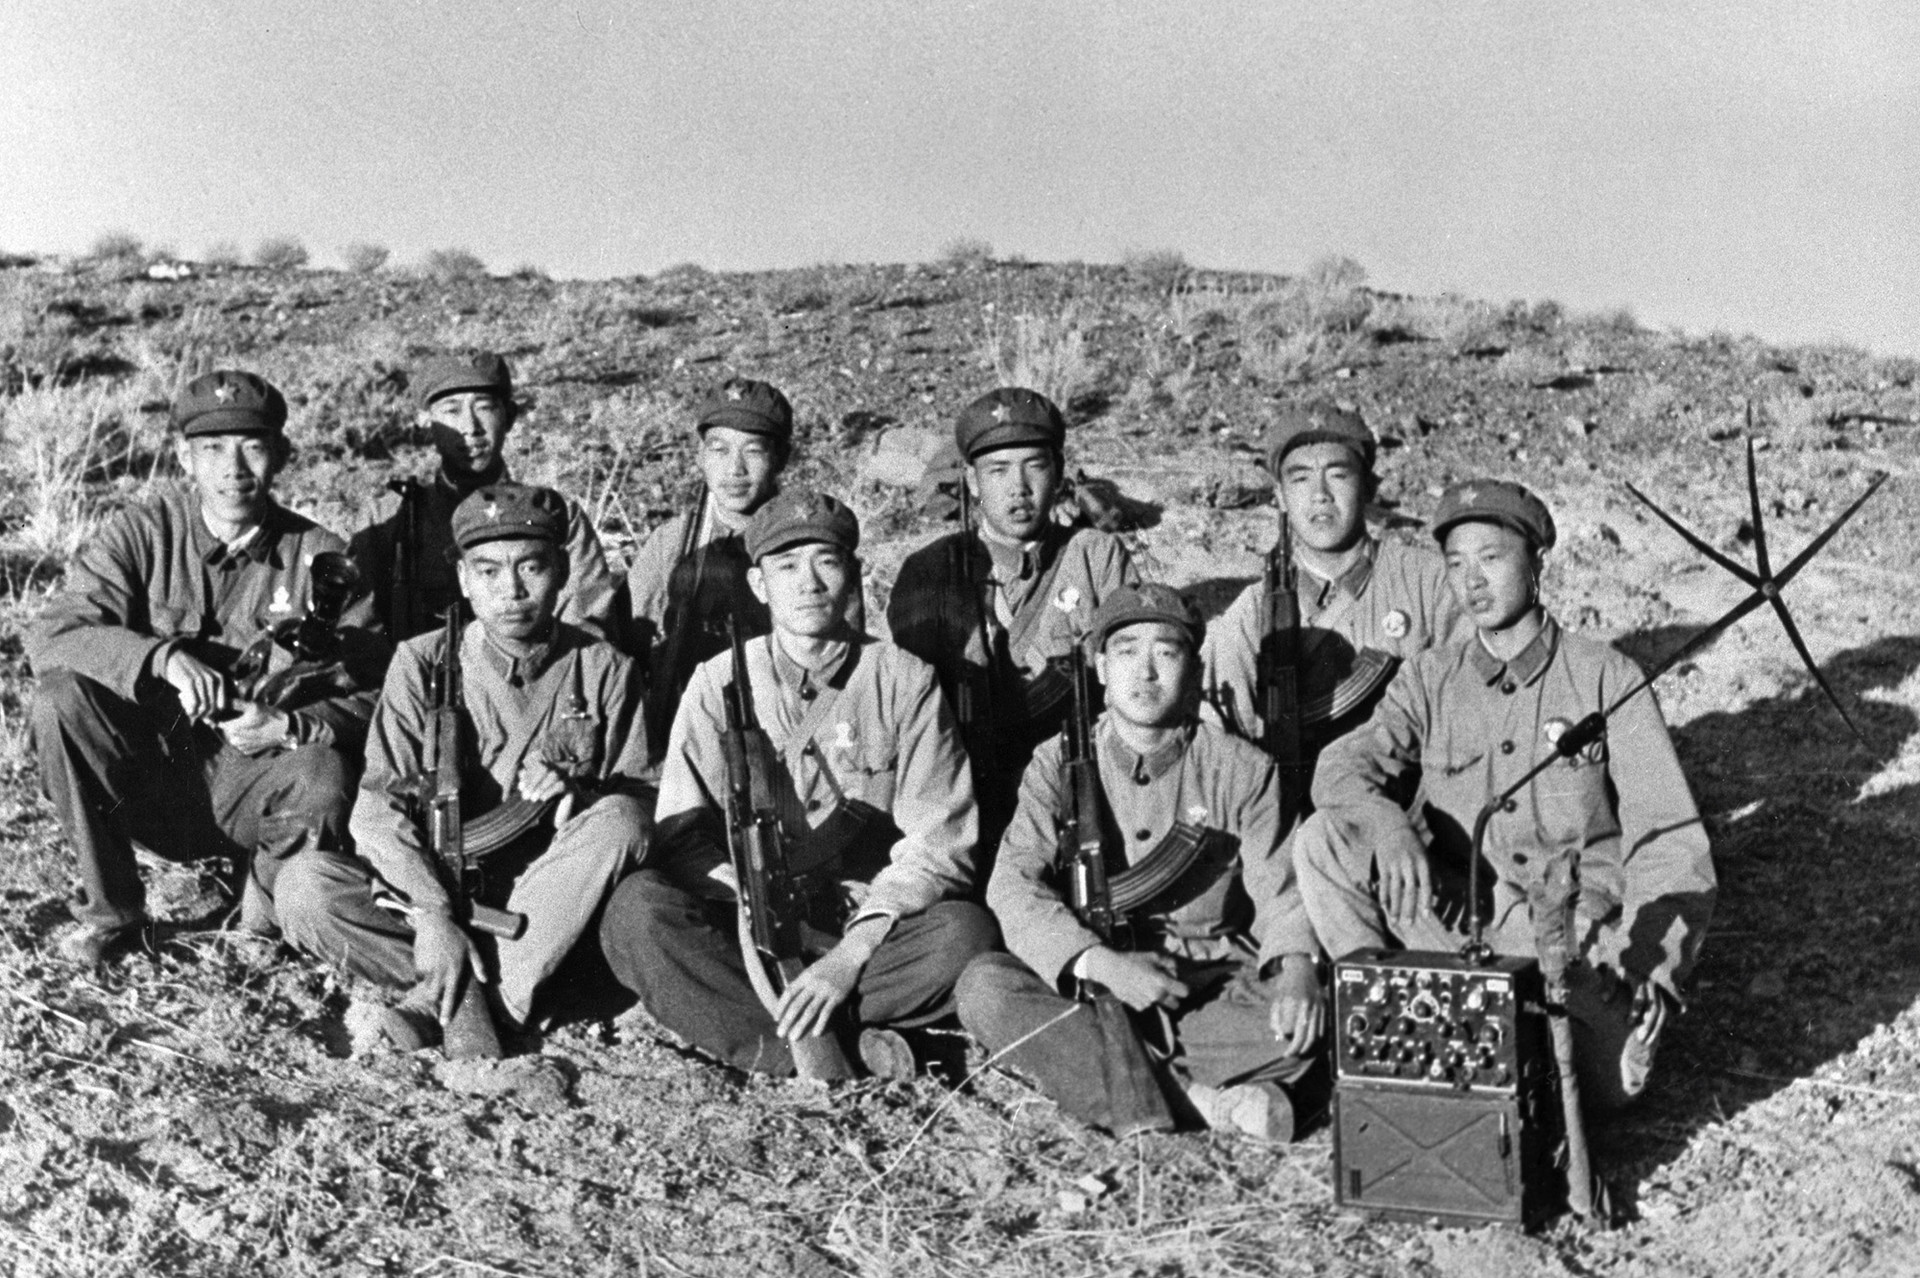 Kineski vojnici naoružani Kalašnjikovima fotografirani prilikom borbe sa sovjetskim pograničnim postrojbama tijekom sino-sovjetskog pograničnog sukoba.

